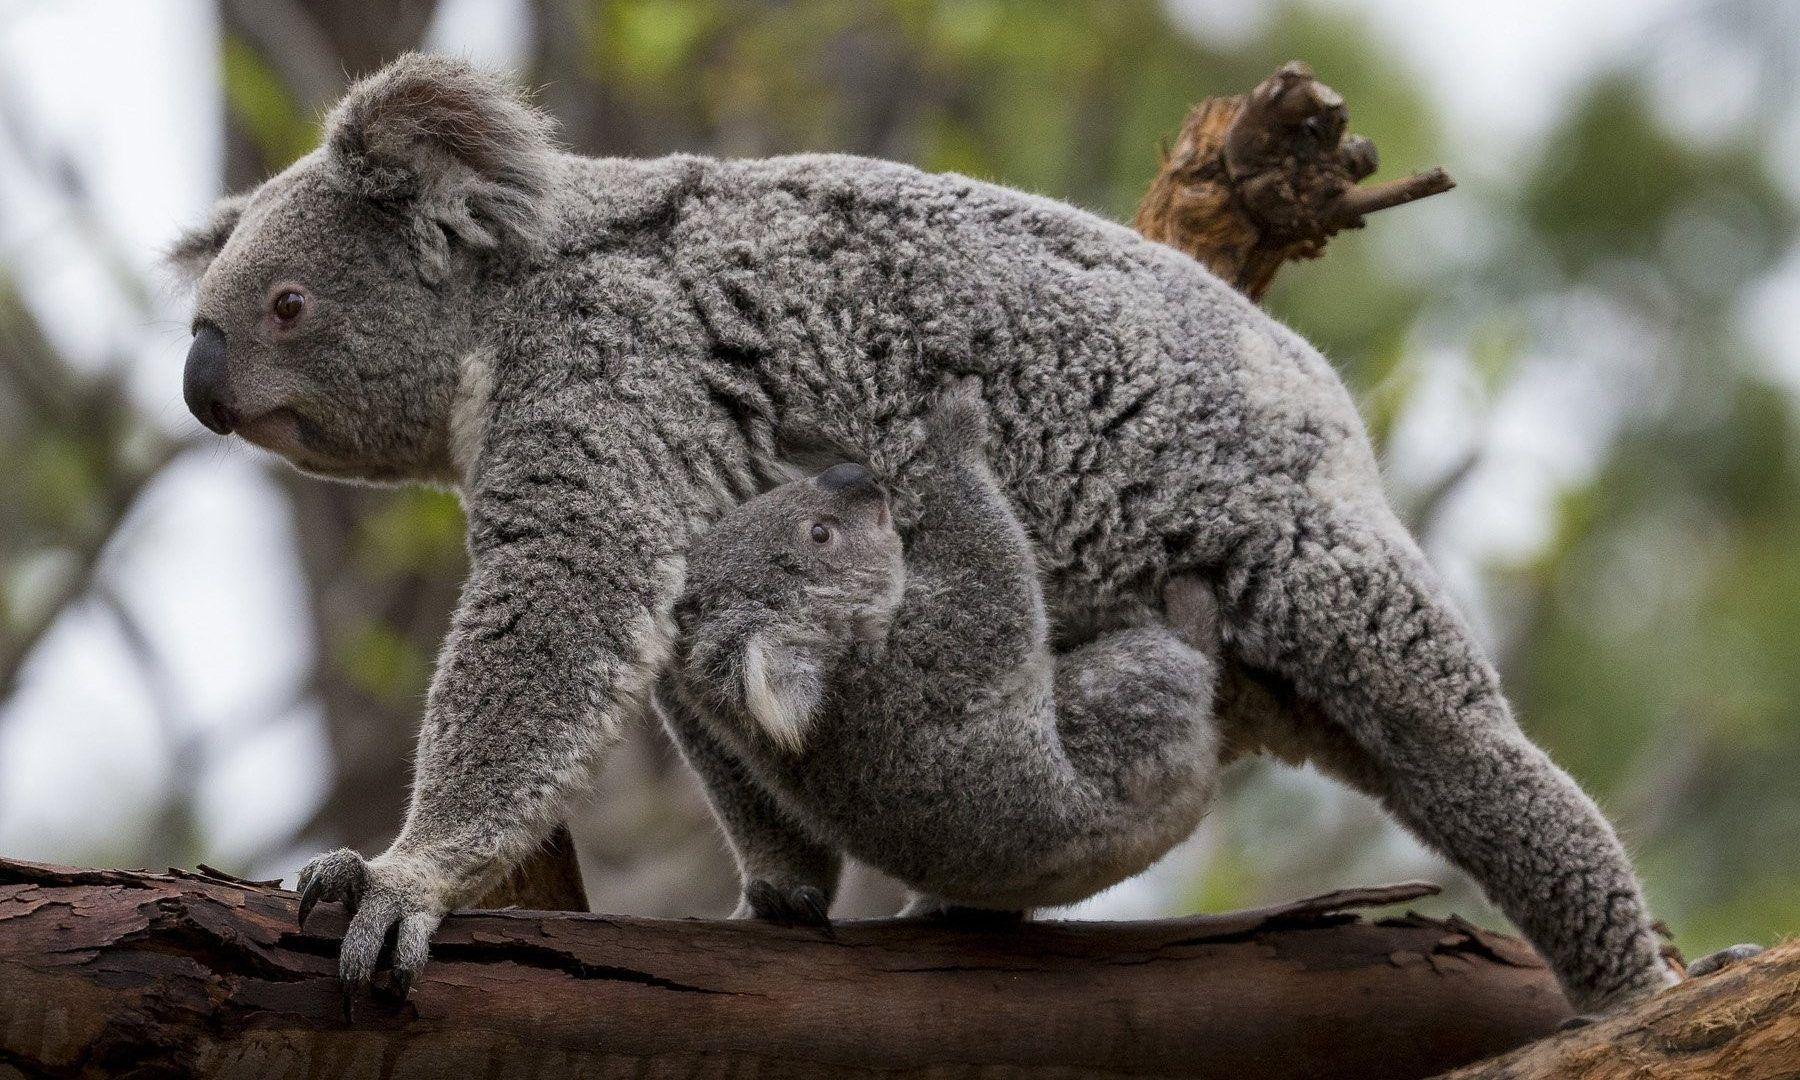 Koala Tag wallpaper: Koala Animal Beautiful Image. Koala Image Of